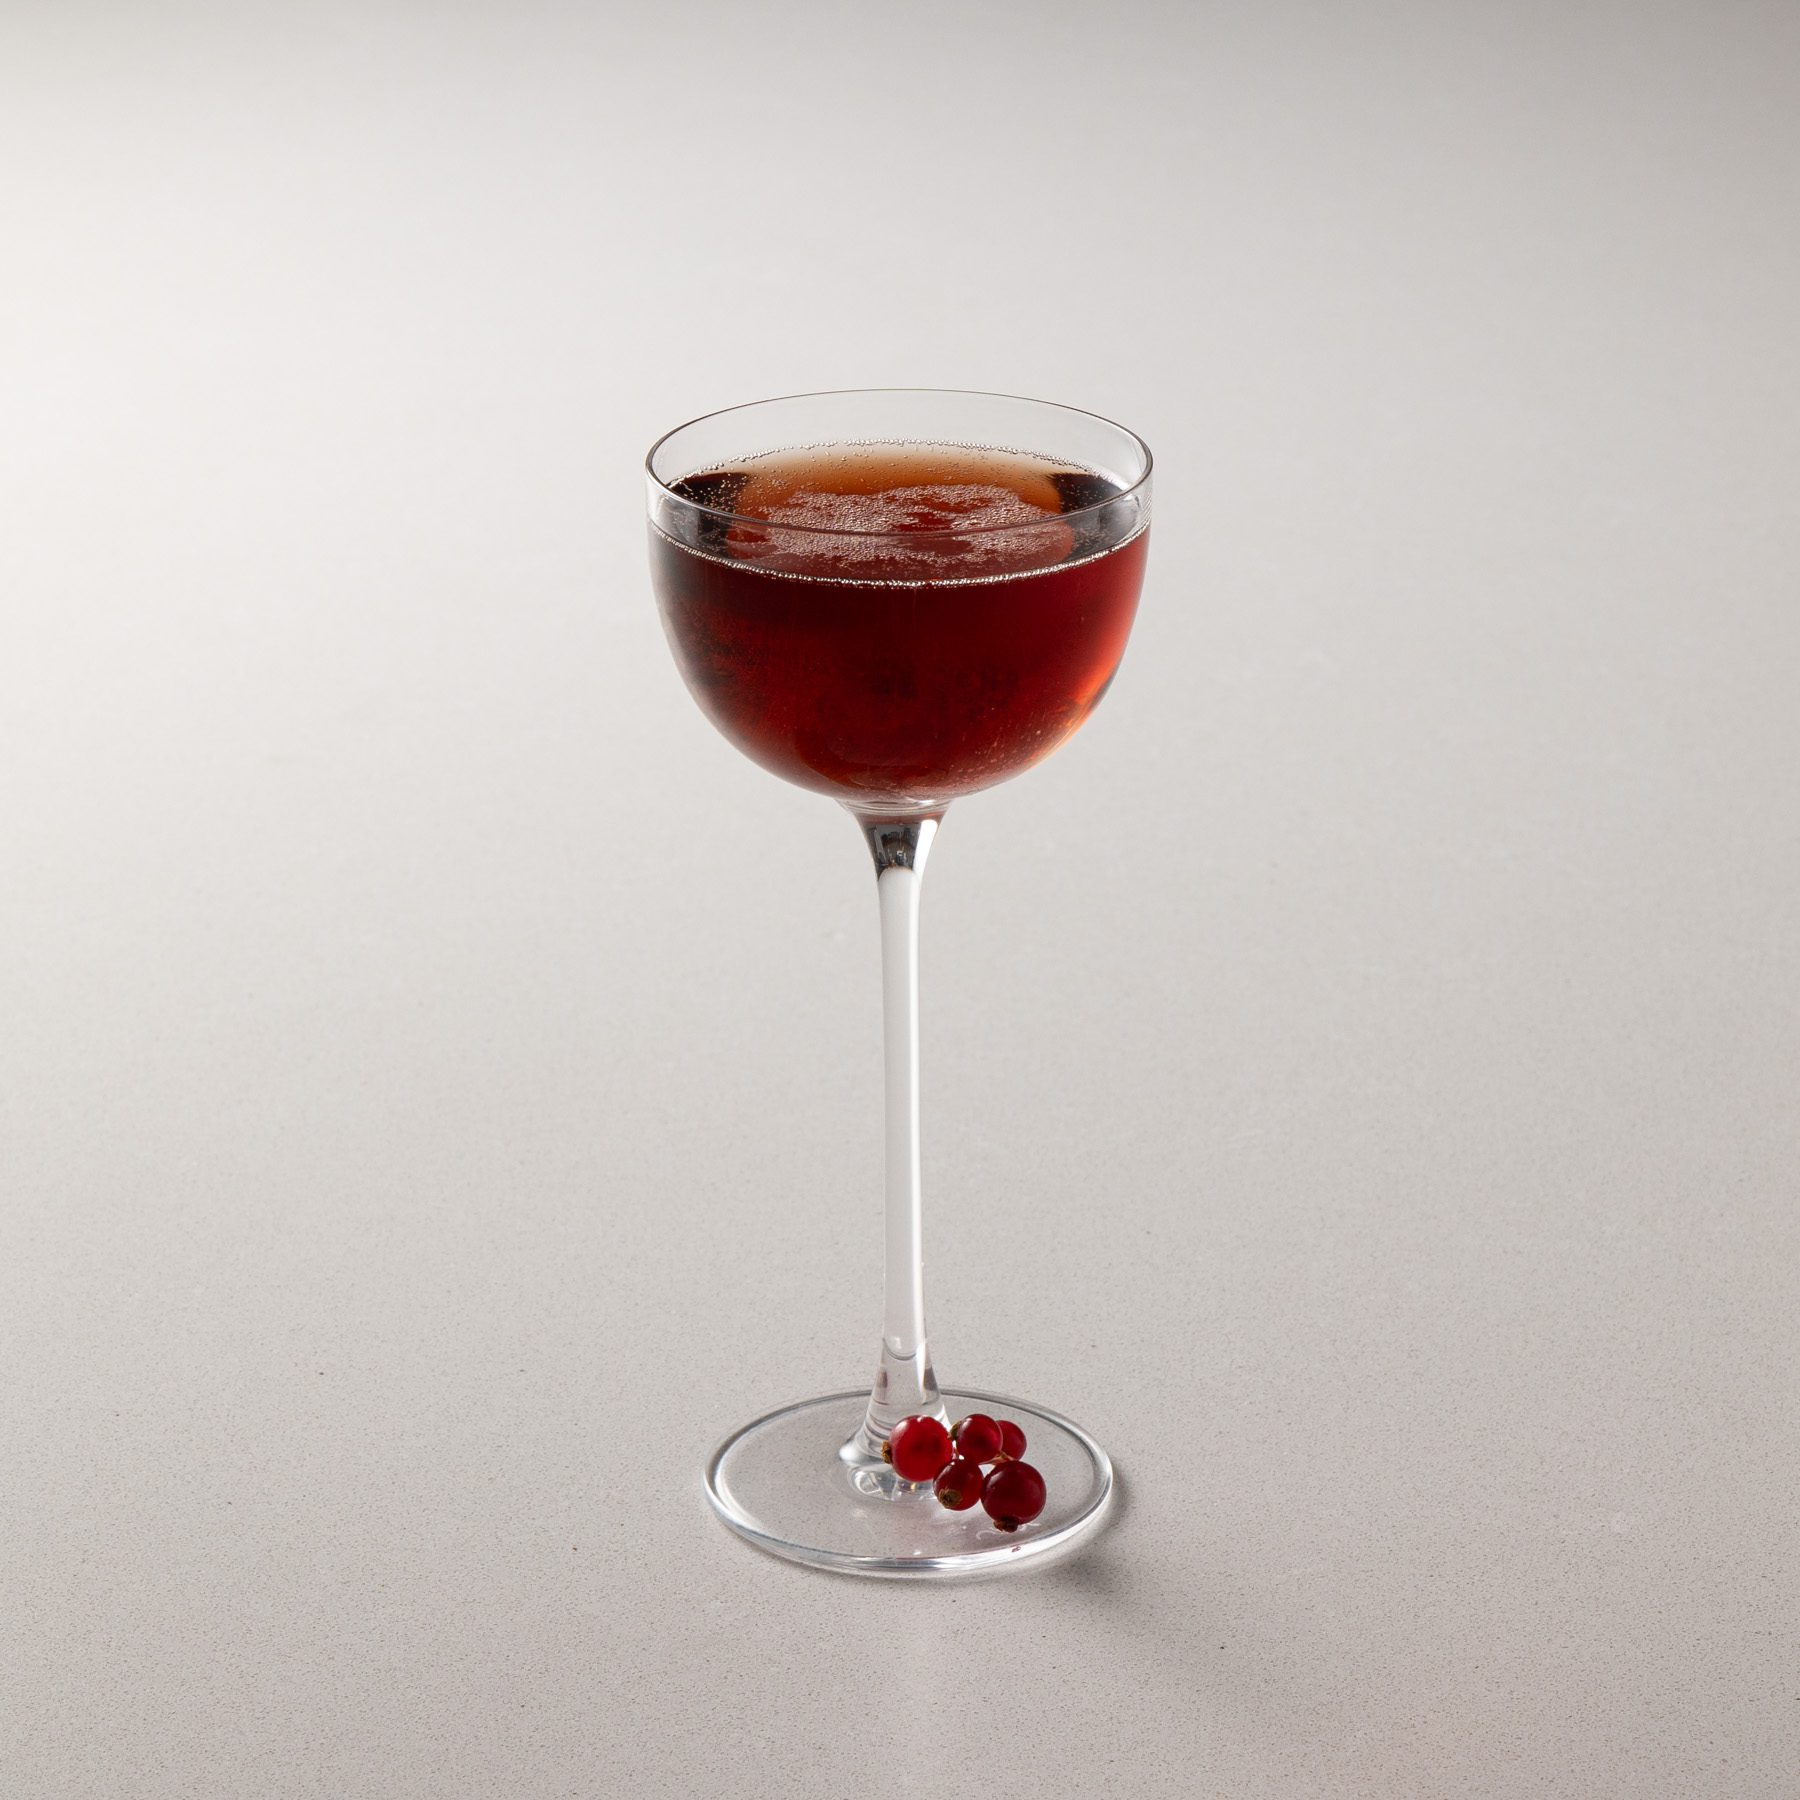 Kir Royal cocktail